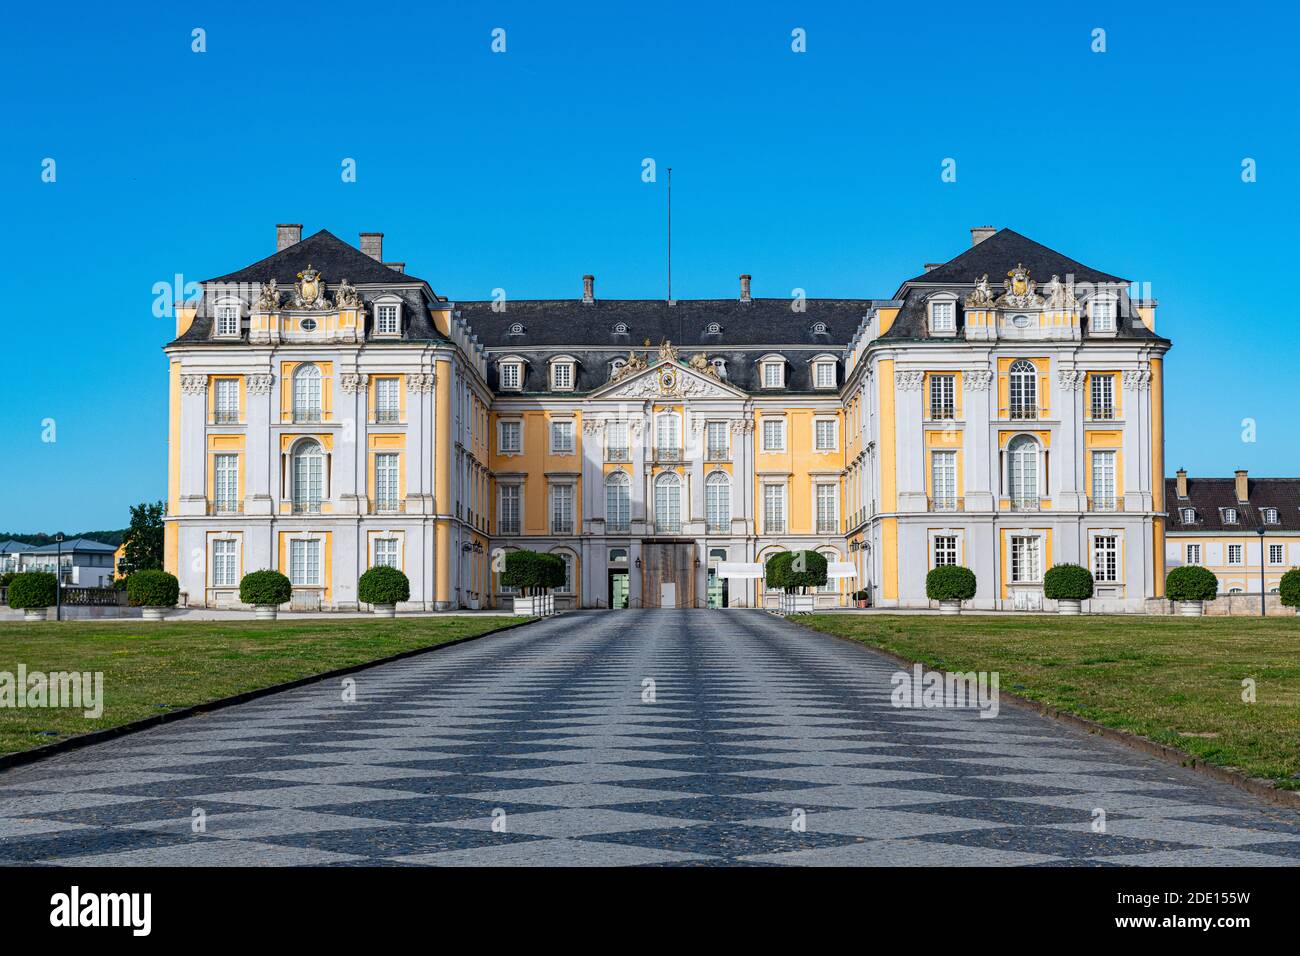 Augustusburg Palace, UNESCO World Heritage Site, Bruhl, North Rhine-Westphalia, Germany, Europe Stock Photo